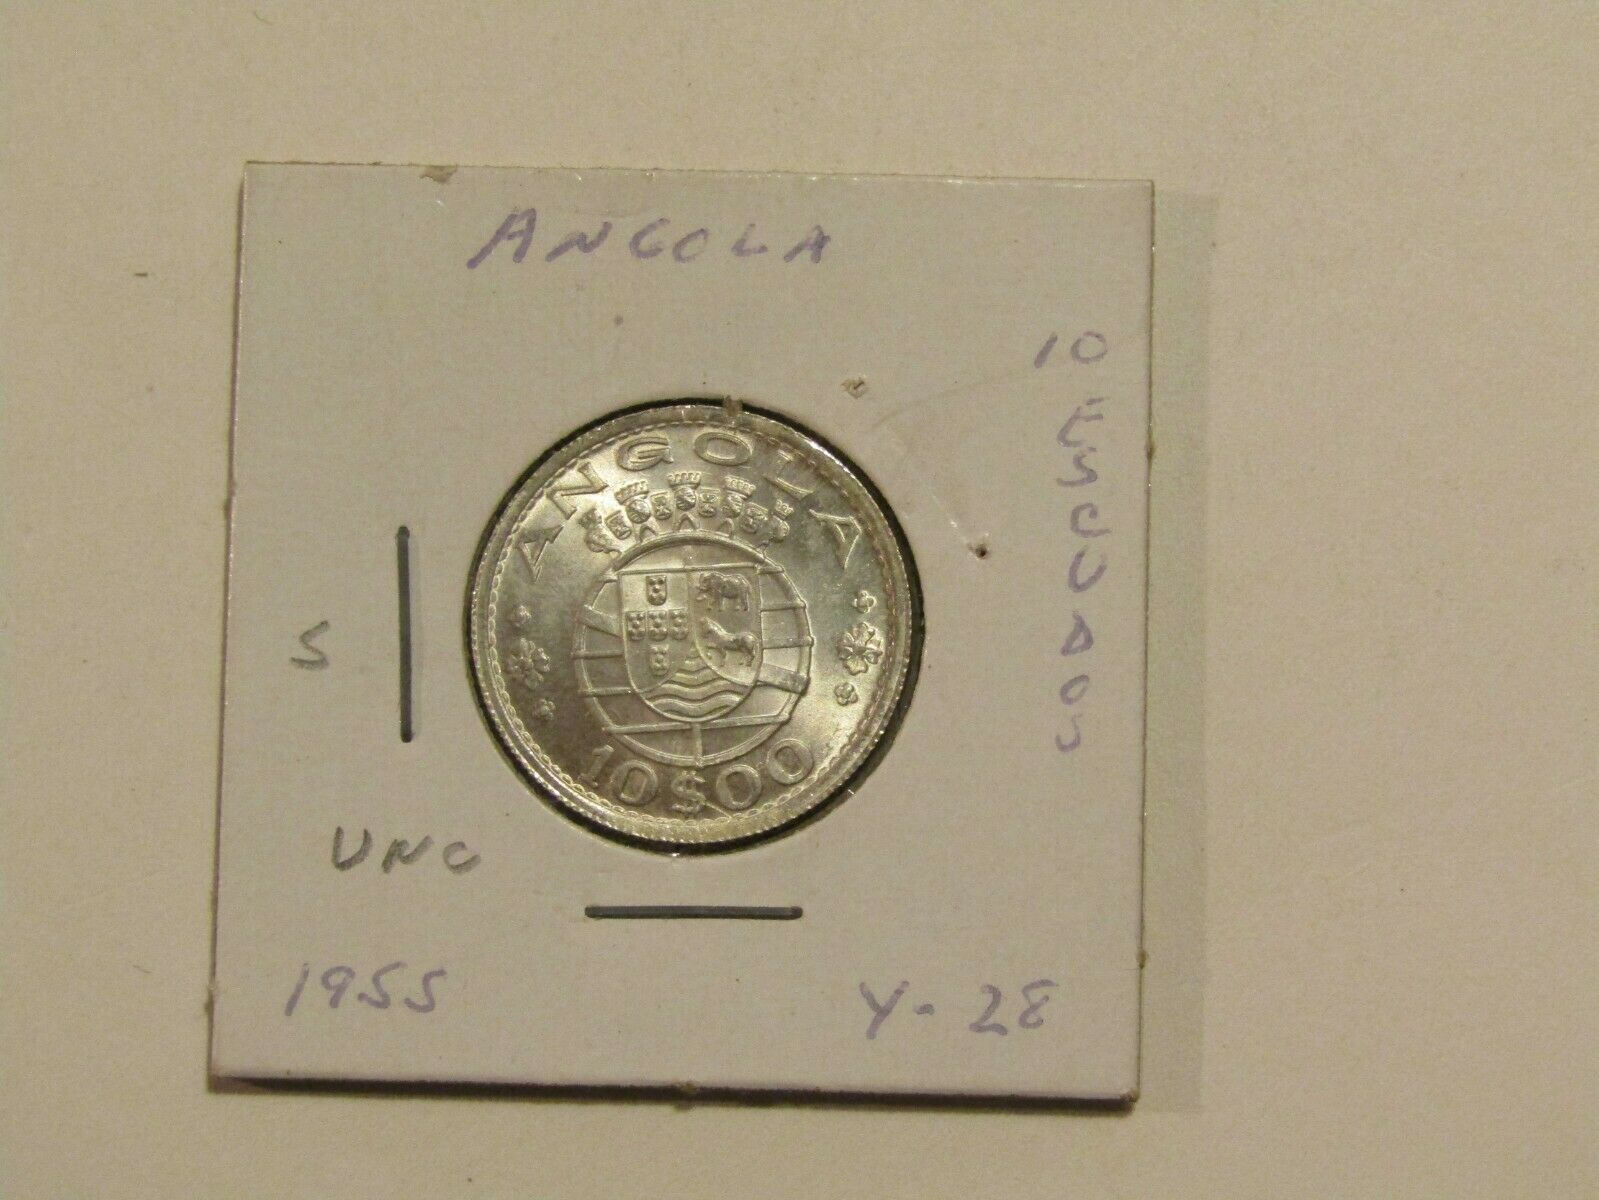 Angola 1955 10 Escudos Silver Unc Coin